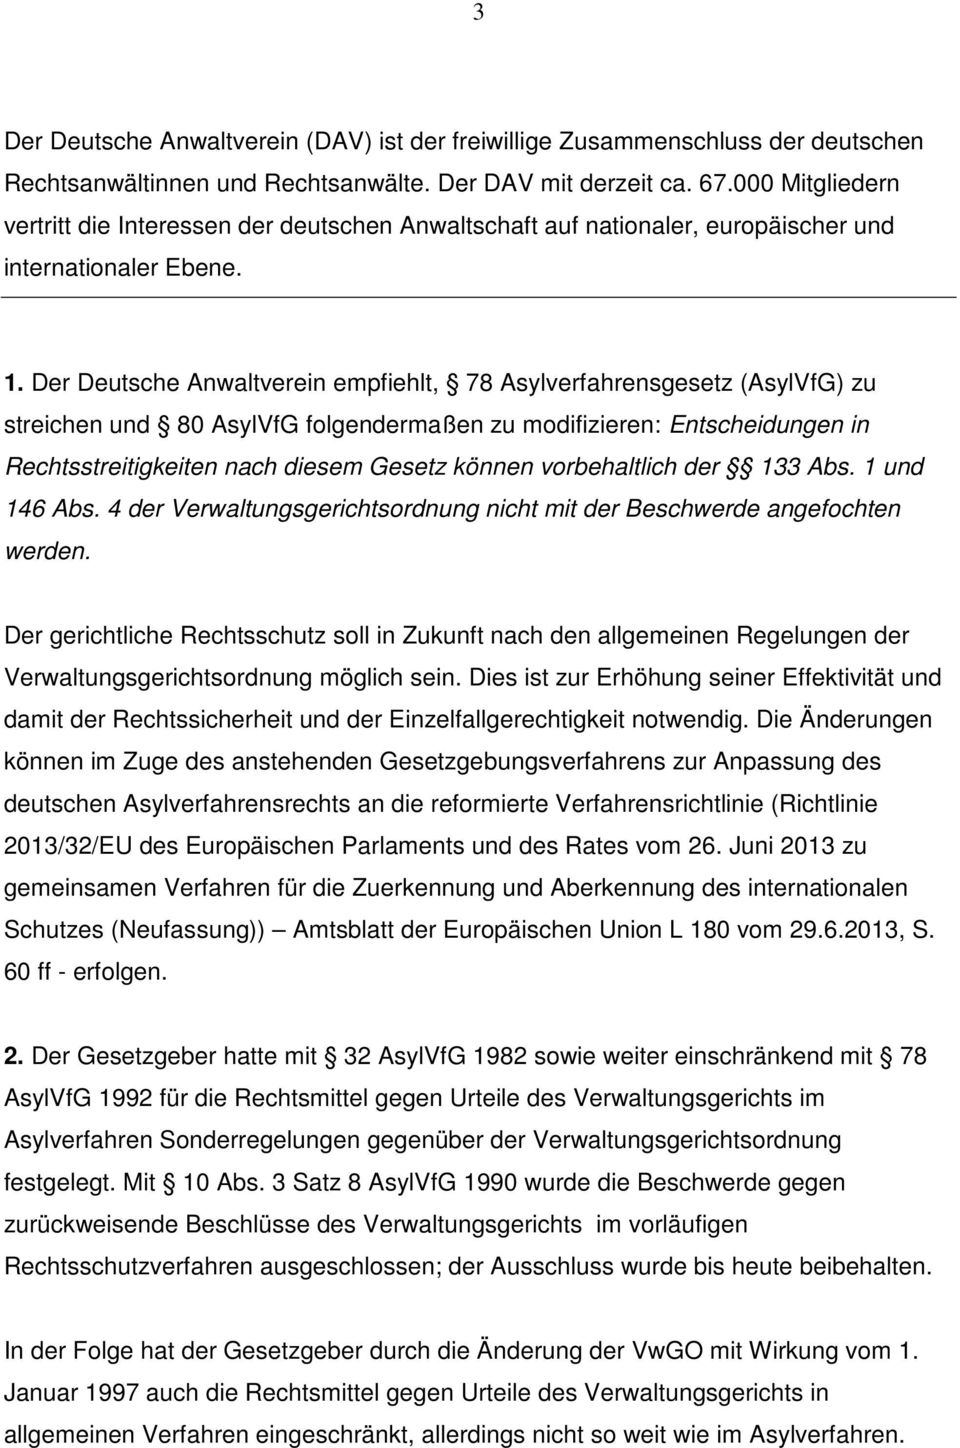 Der Deutsche Anwaltverein empfiehlt, 78 Asylverfahrensgesetz (AsylVfG) zu streichen und 80 AsylVfG folgendermaßen zu modifizieren: Entscheidungen in Rechtsstreitigkeiten nach diesem Gesetz können